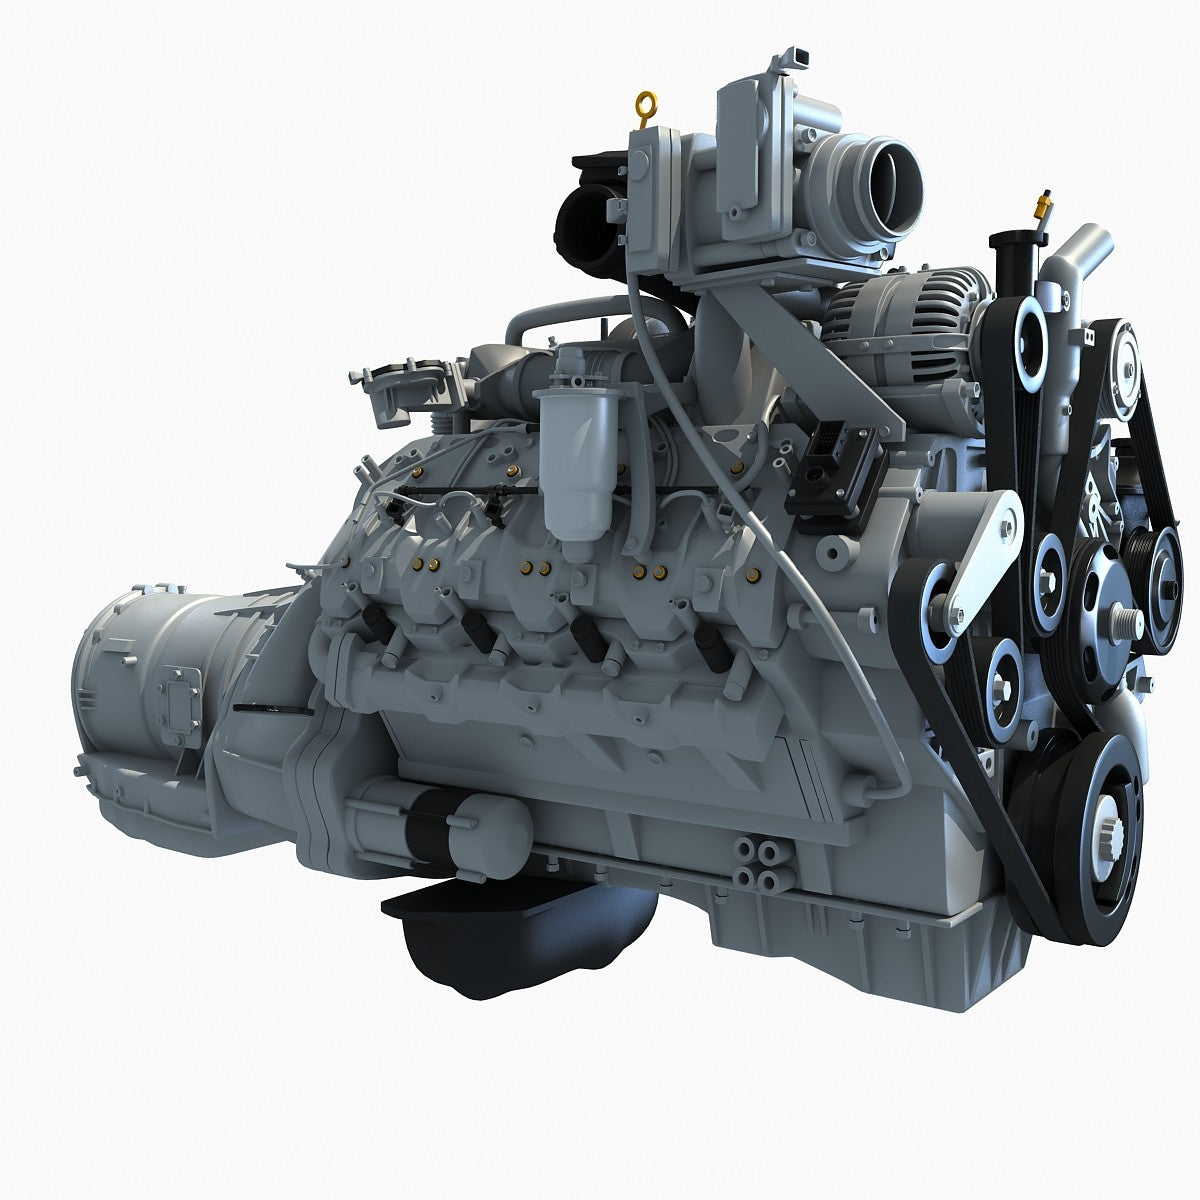 3D Engine Models